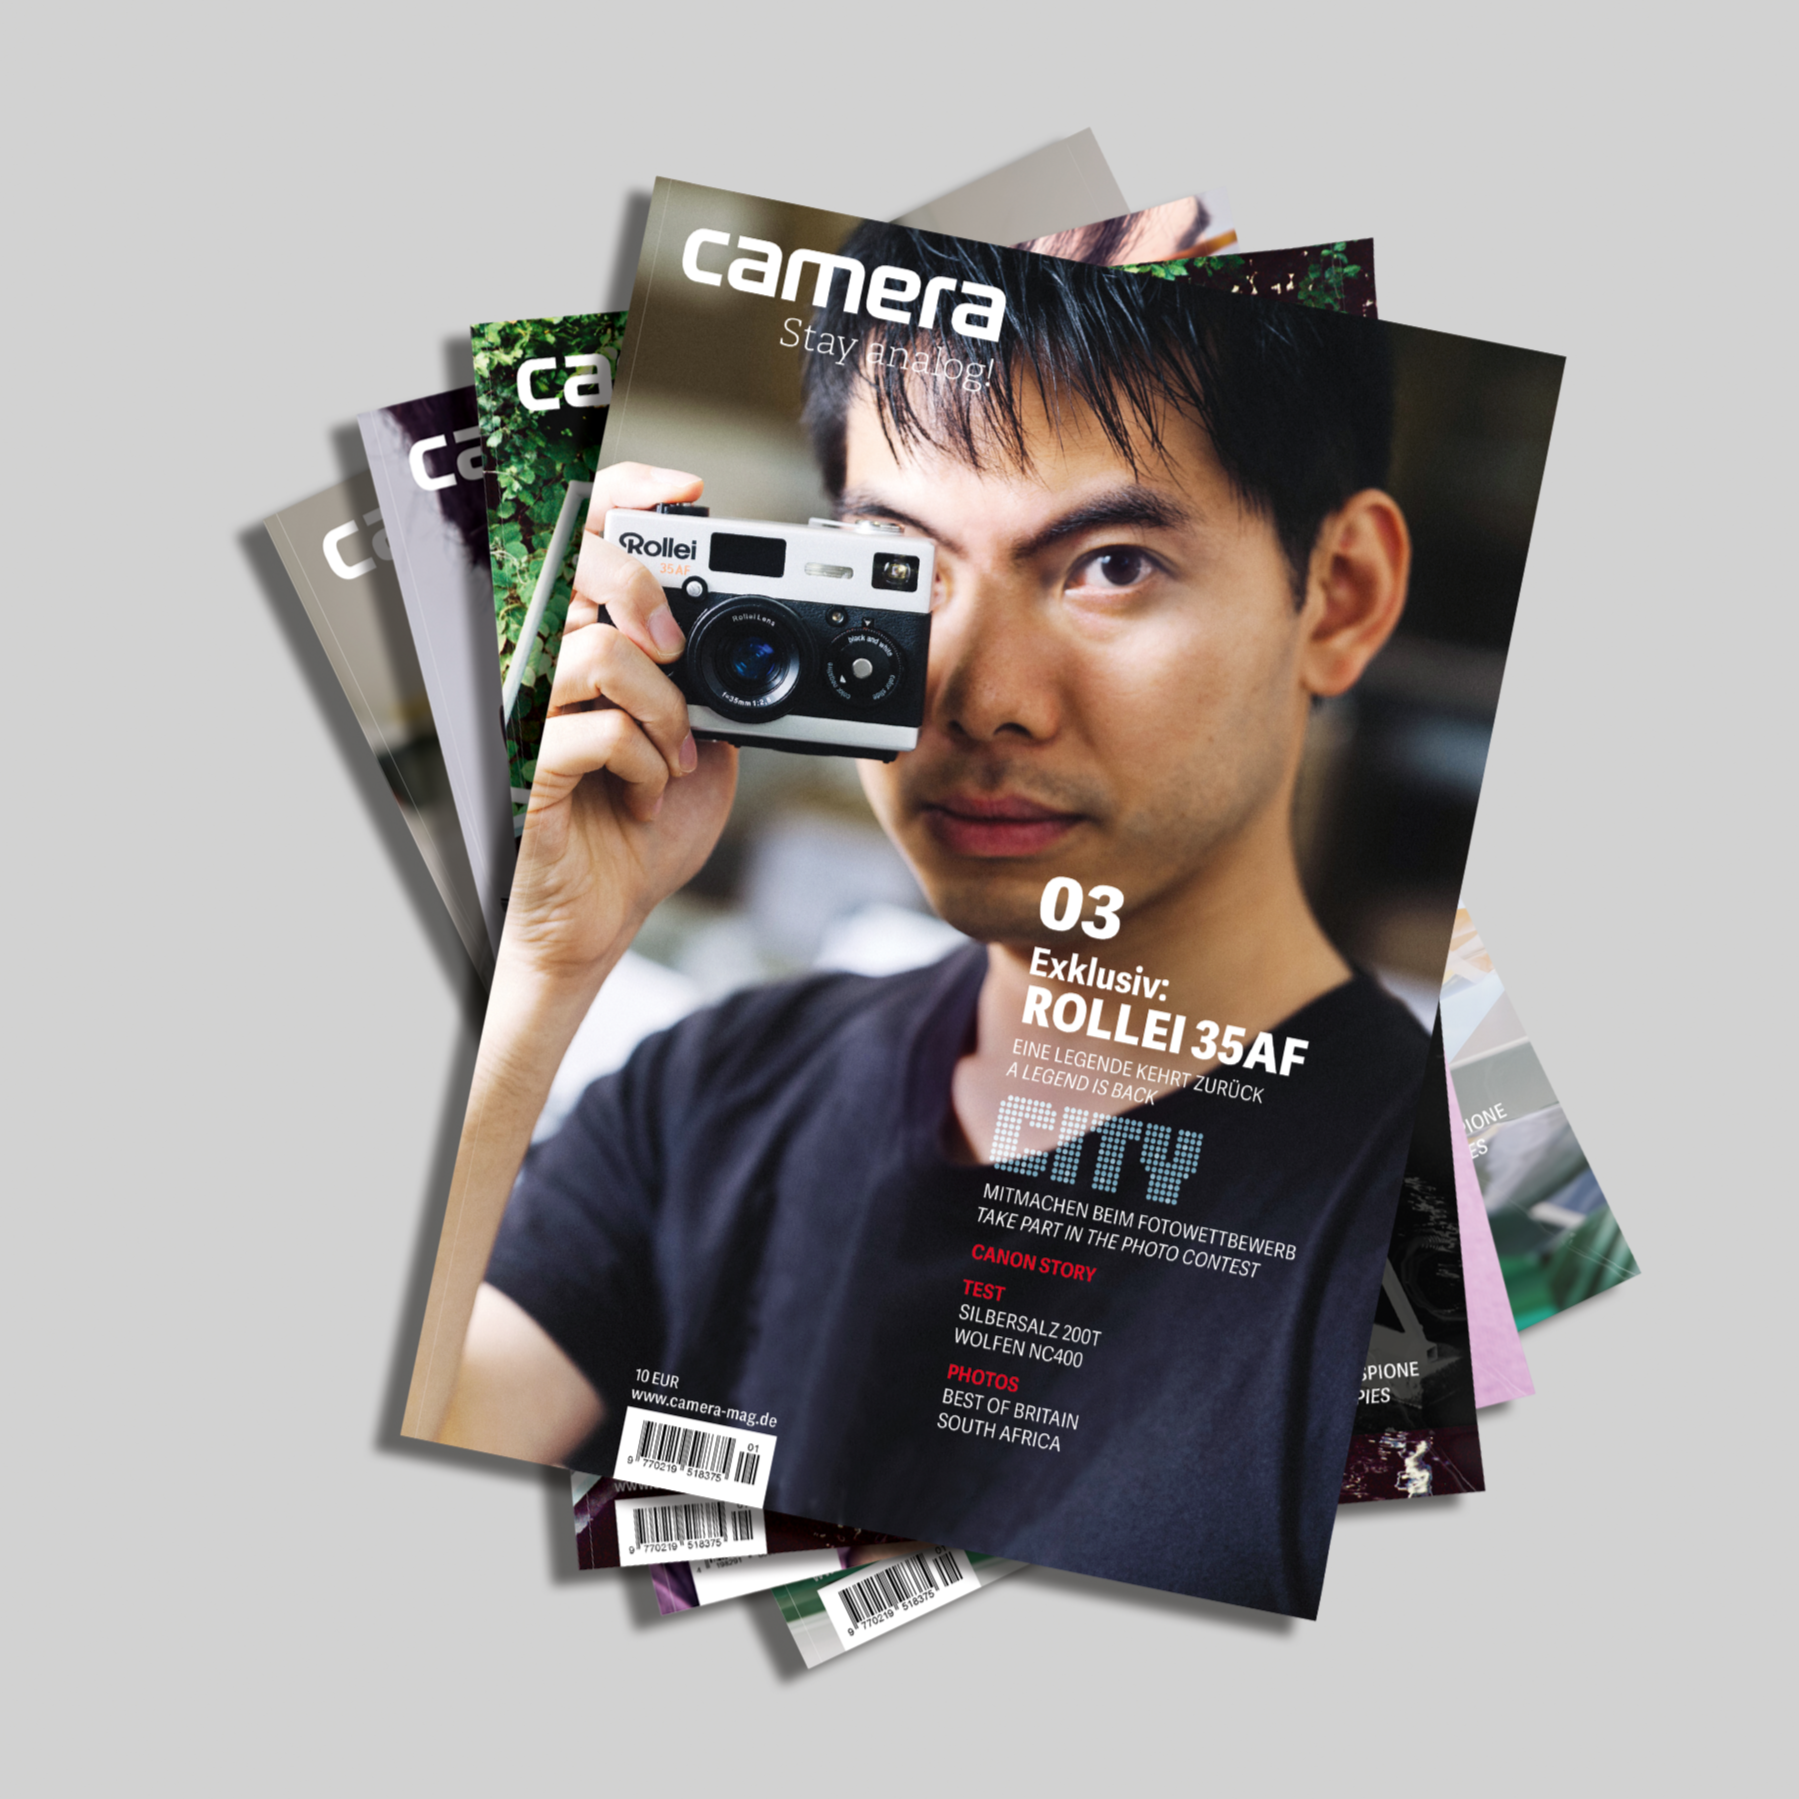 4x camera - das neue Fotomagazin (Abo)